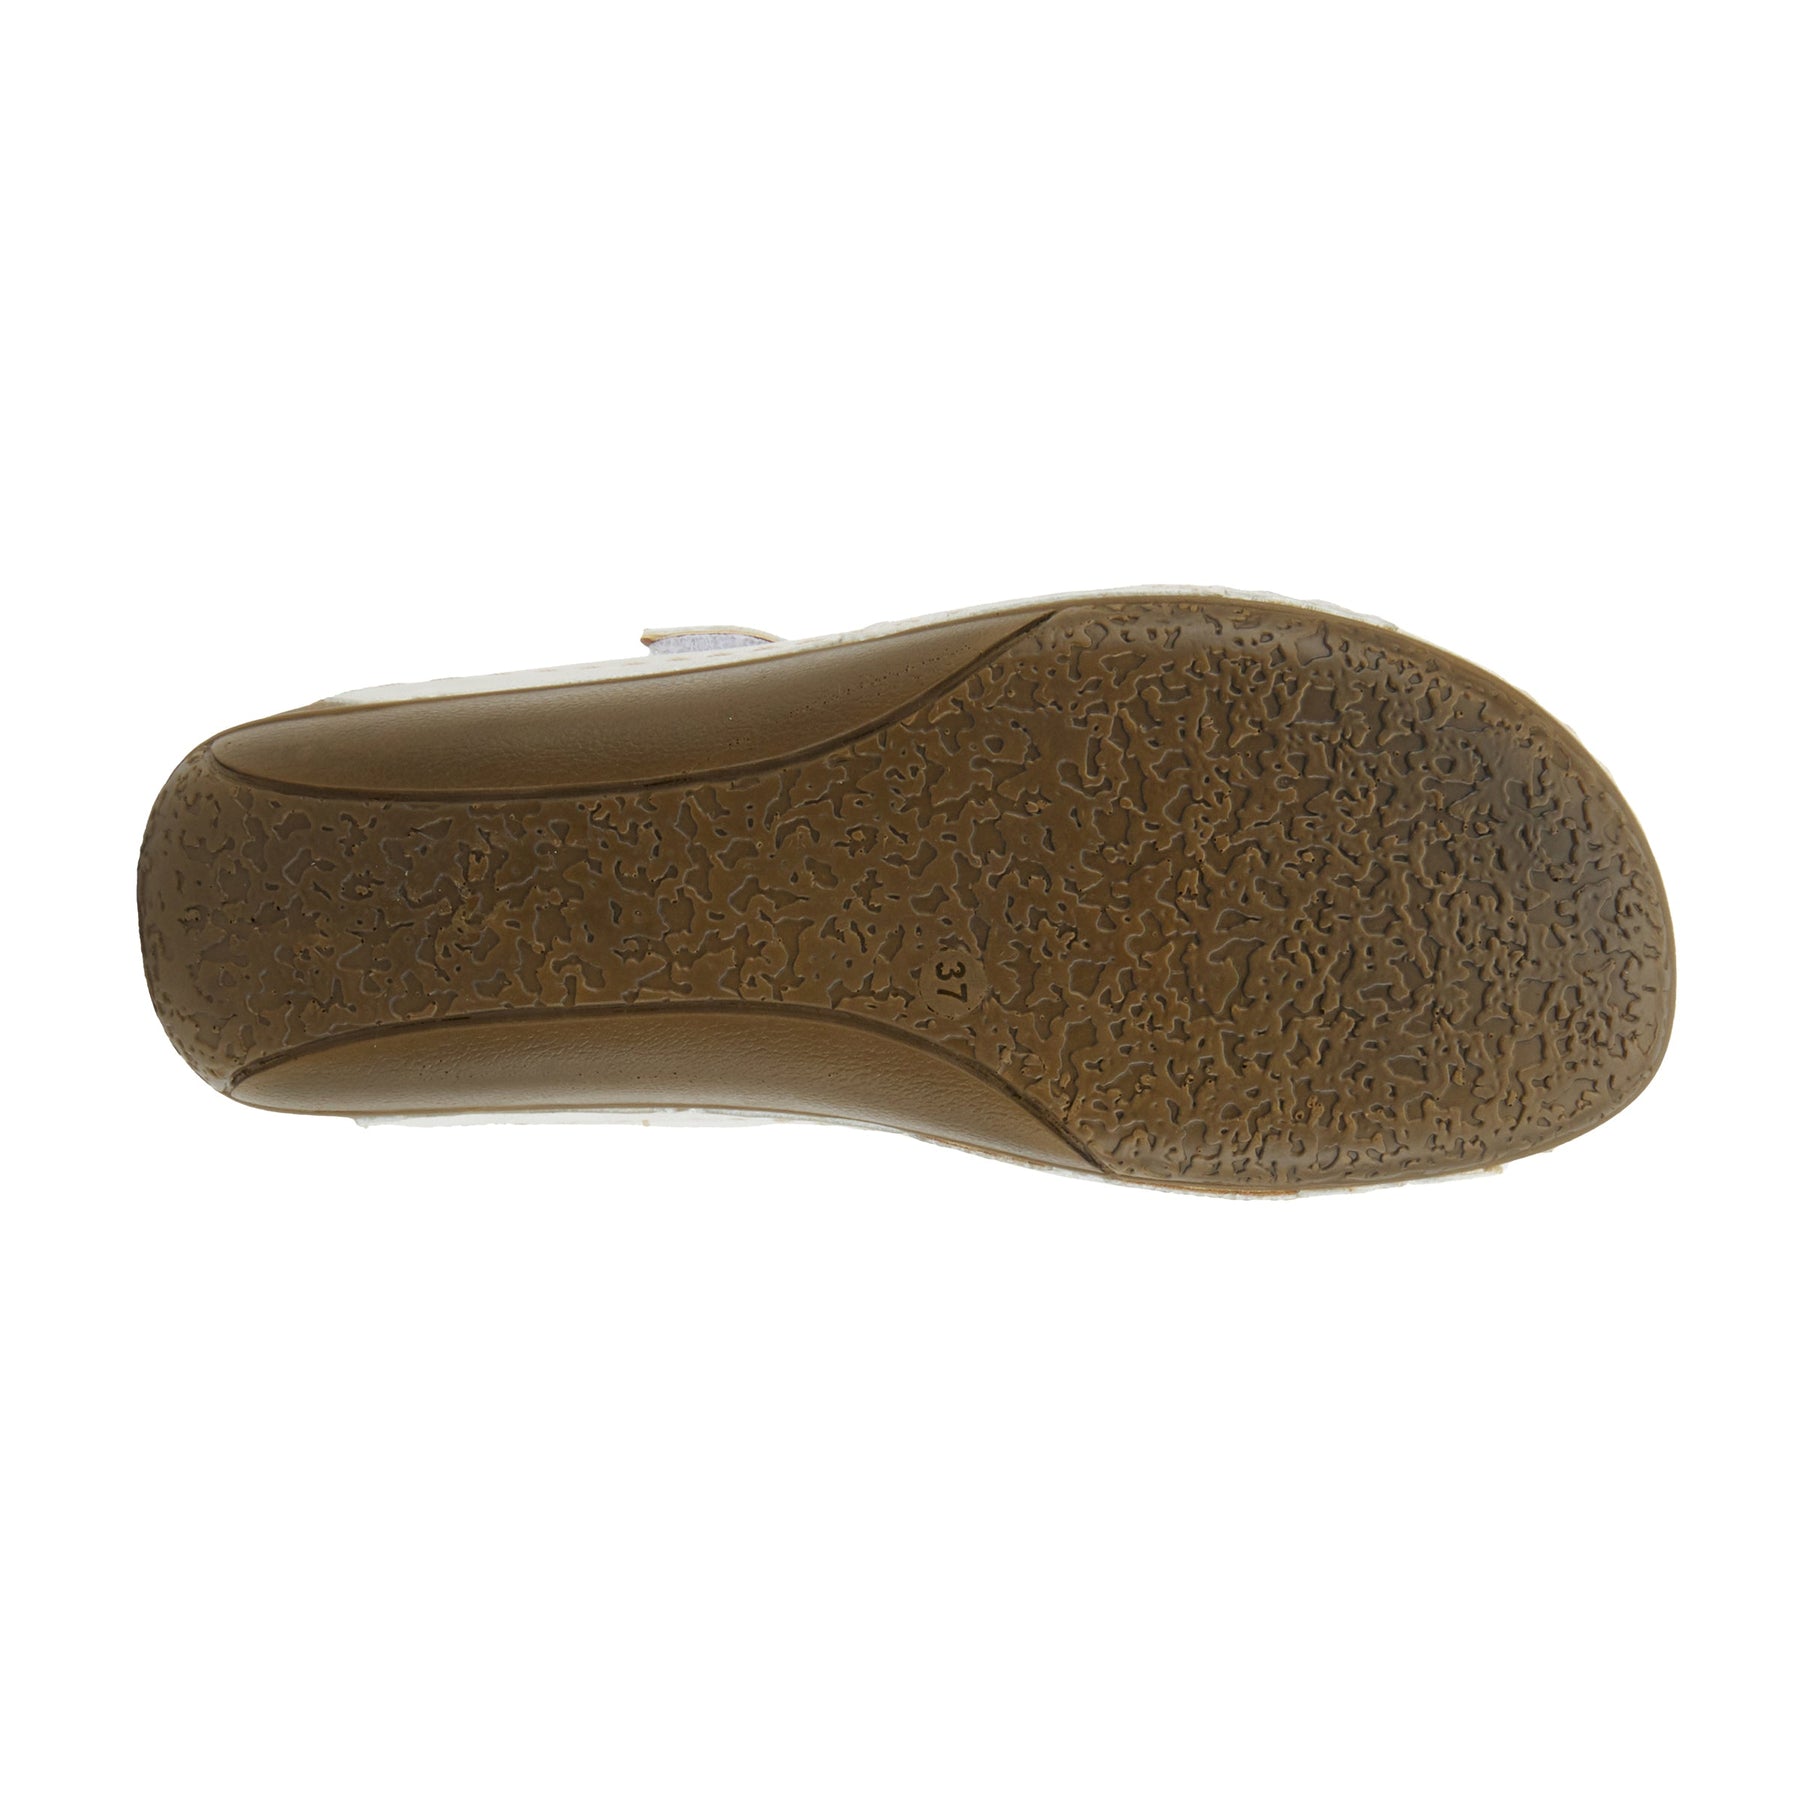 Flexus Denia Slide Sandal: Easy Slide Sandal – Spring Step Shoes